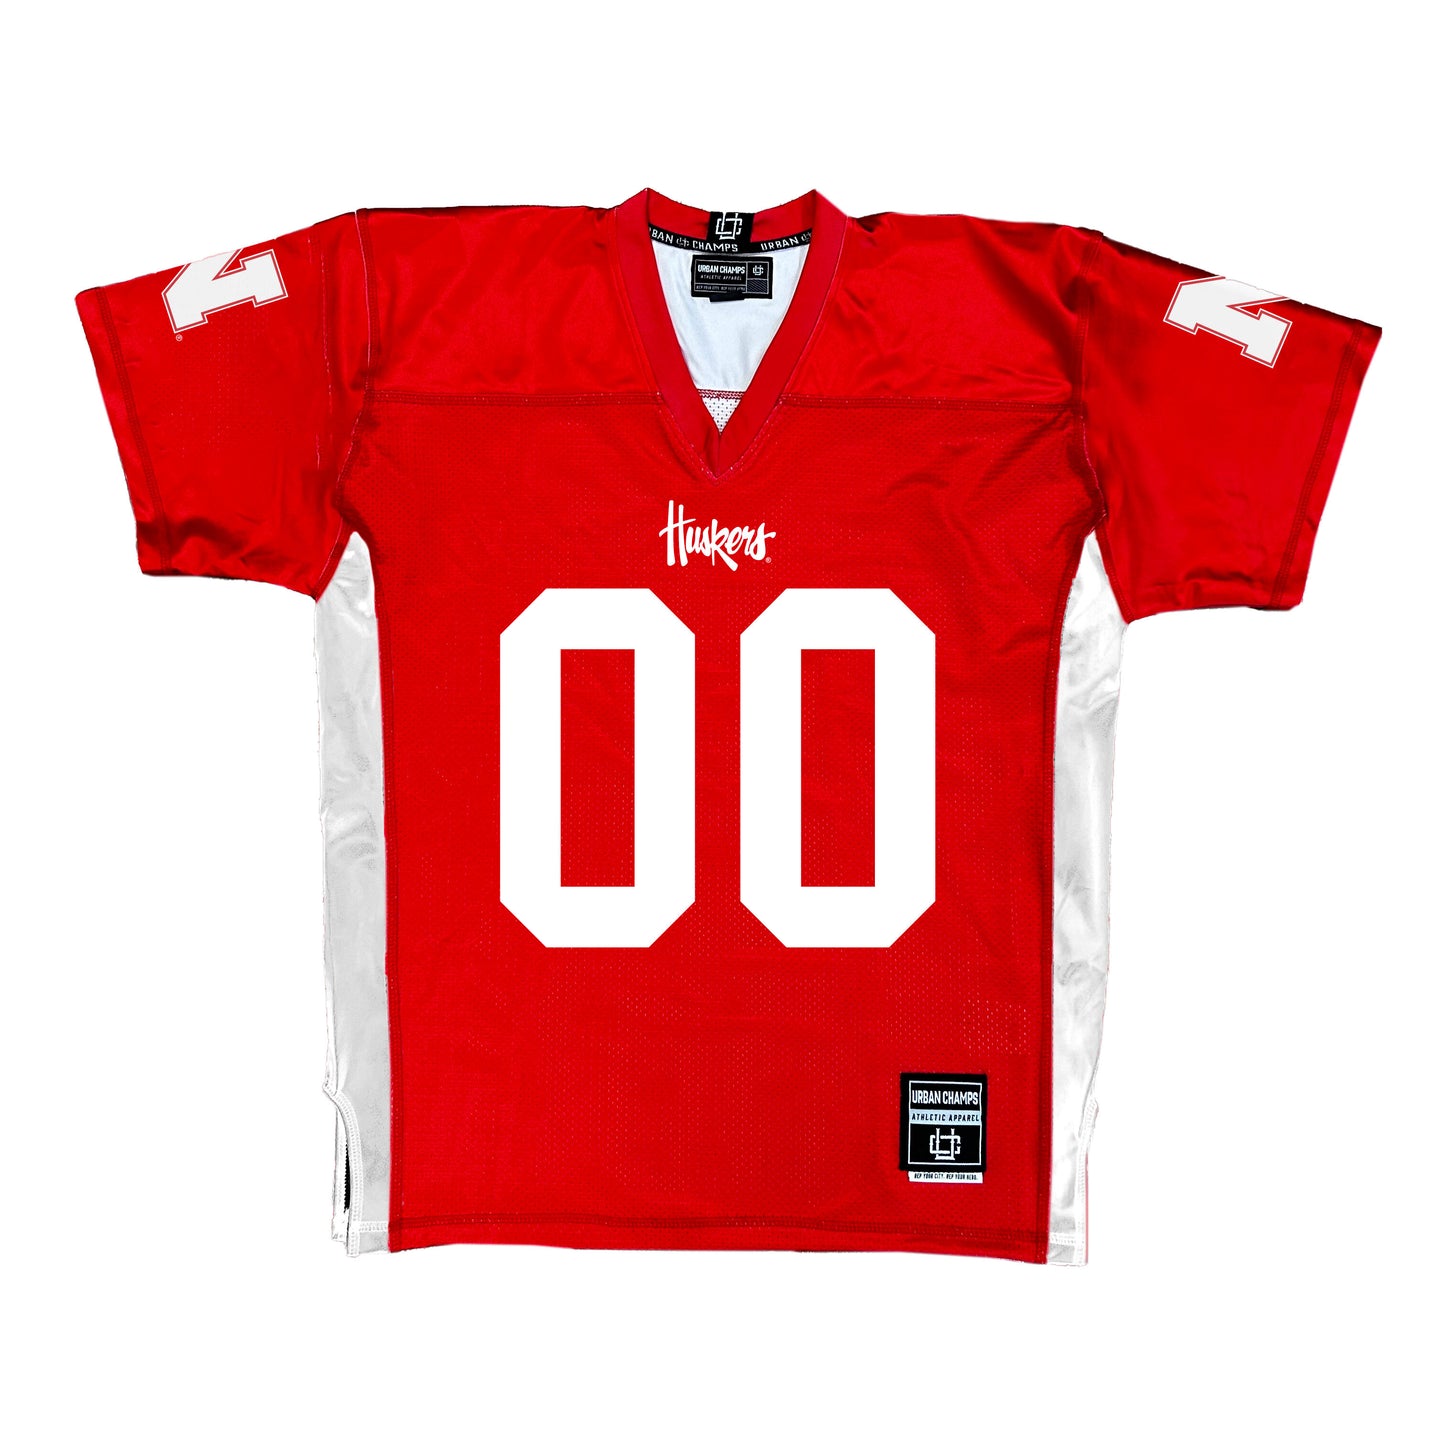 Red Nebraska Football Jersey